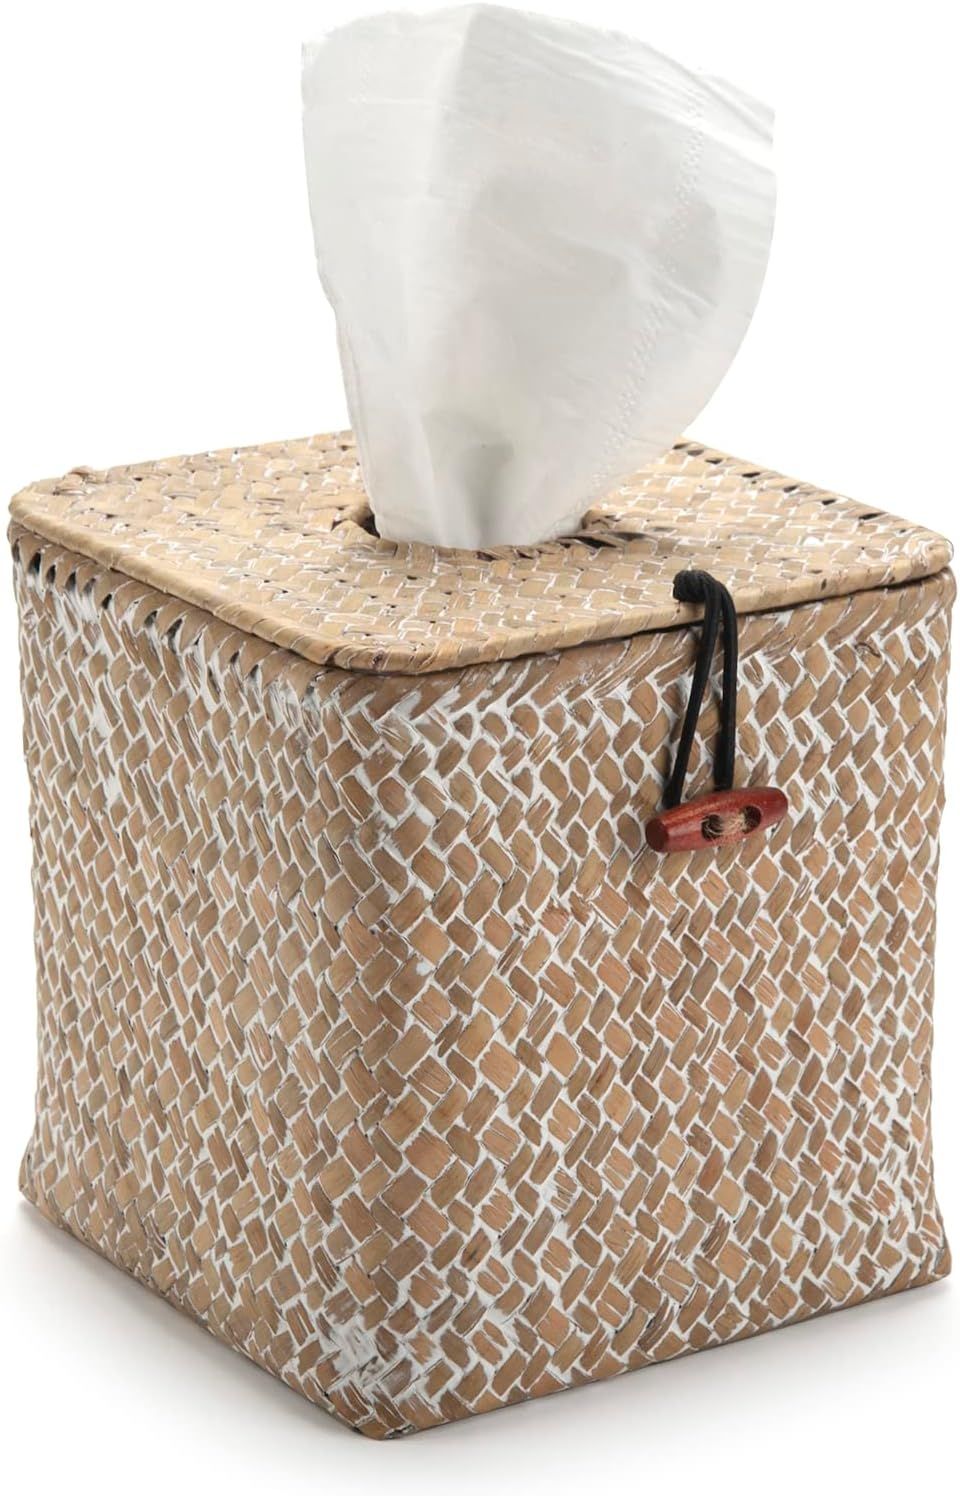 Seagrass Square Tissue Box Cover Woven Napkin Holder Decorative for Bathroom Farmhouse (Whitewash... | Amazon (US)